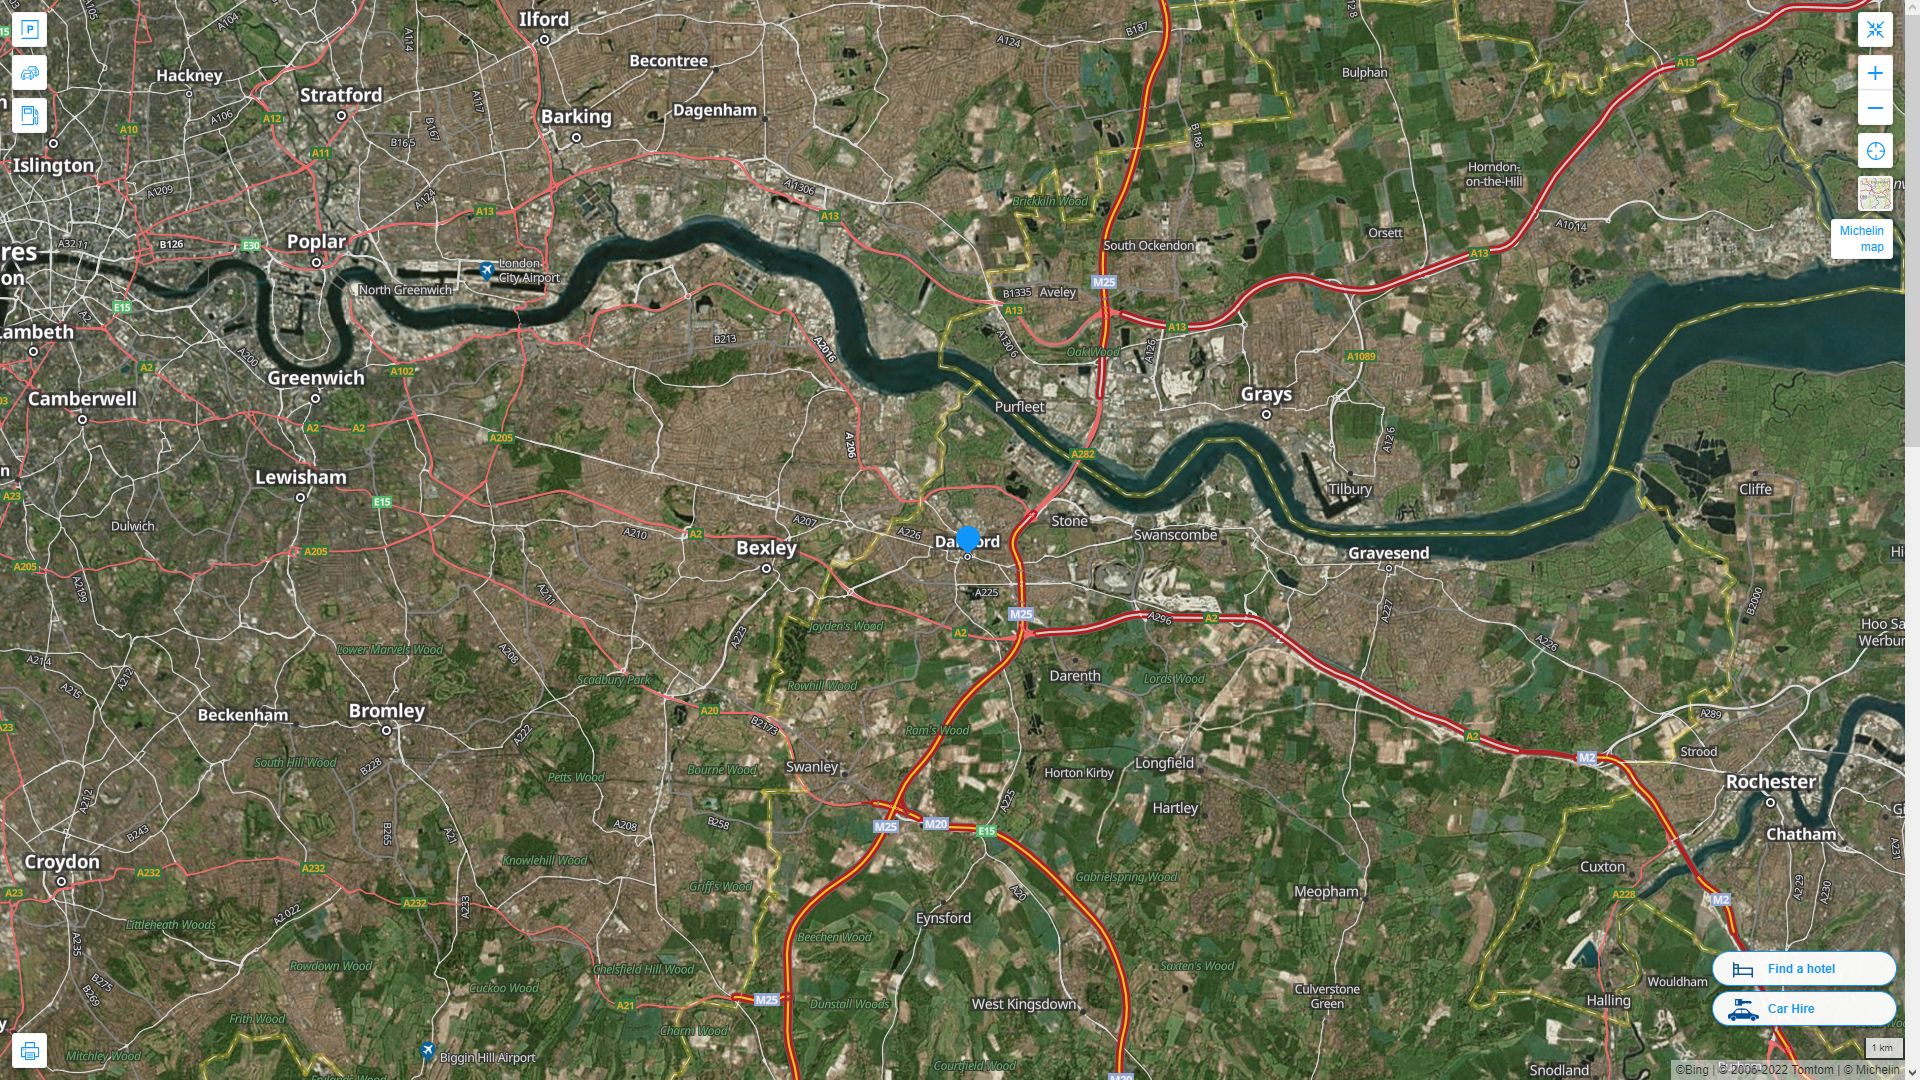 Dartford Royaume Uni Autoroute et carte routiere avec vue satellite